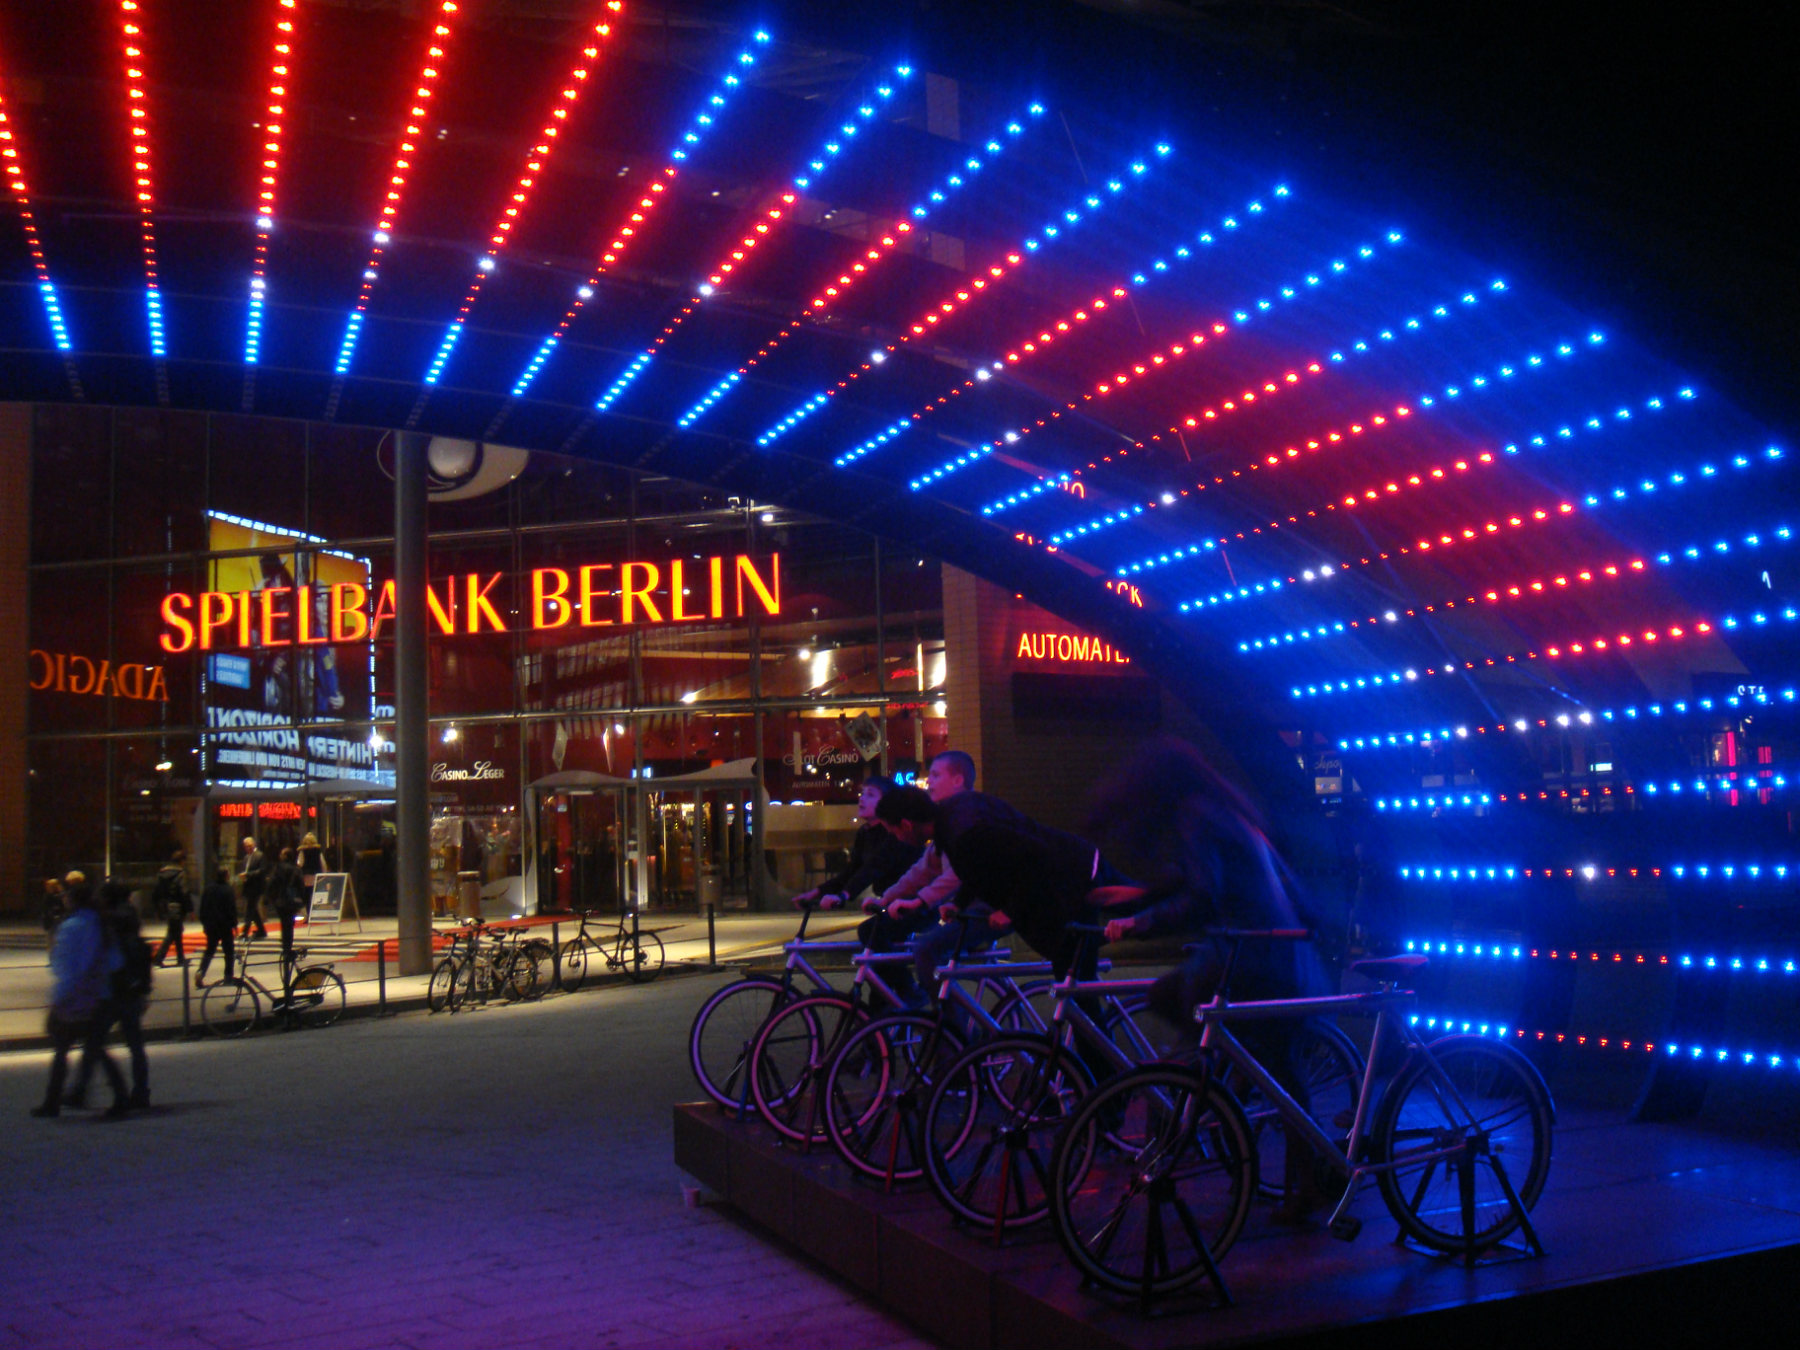   Instalaciones de Light Art, durante el Festival de las Luces 2014, Berlín.